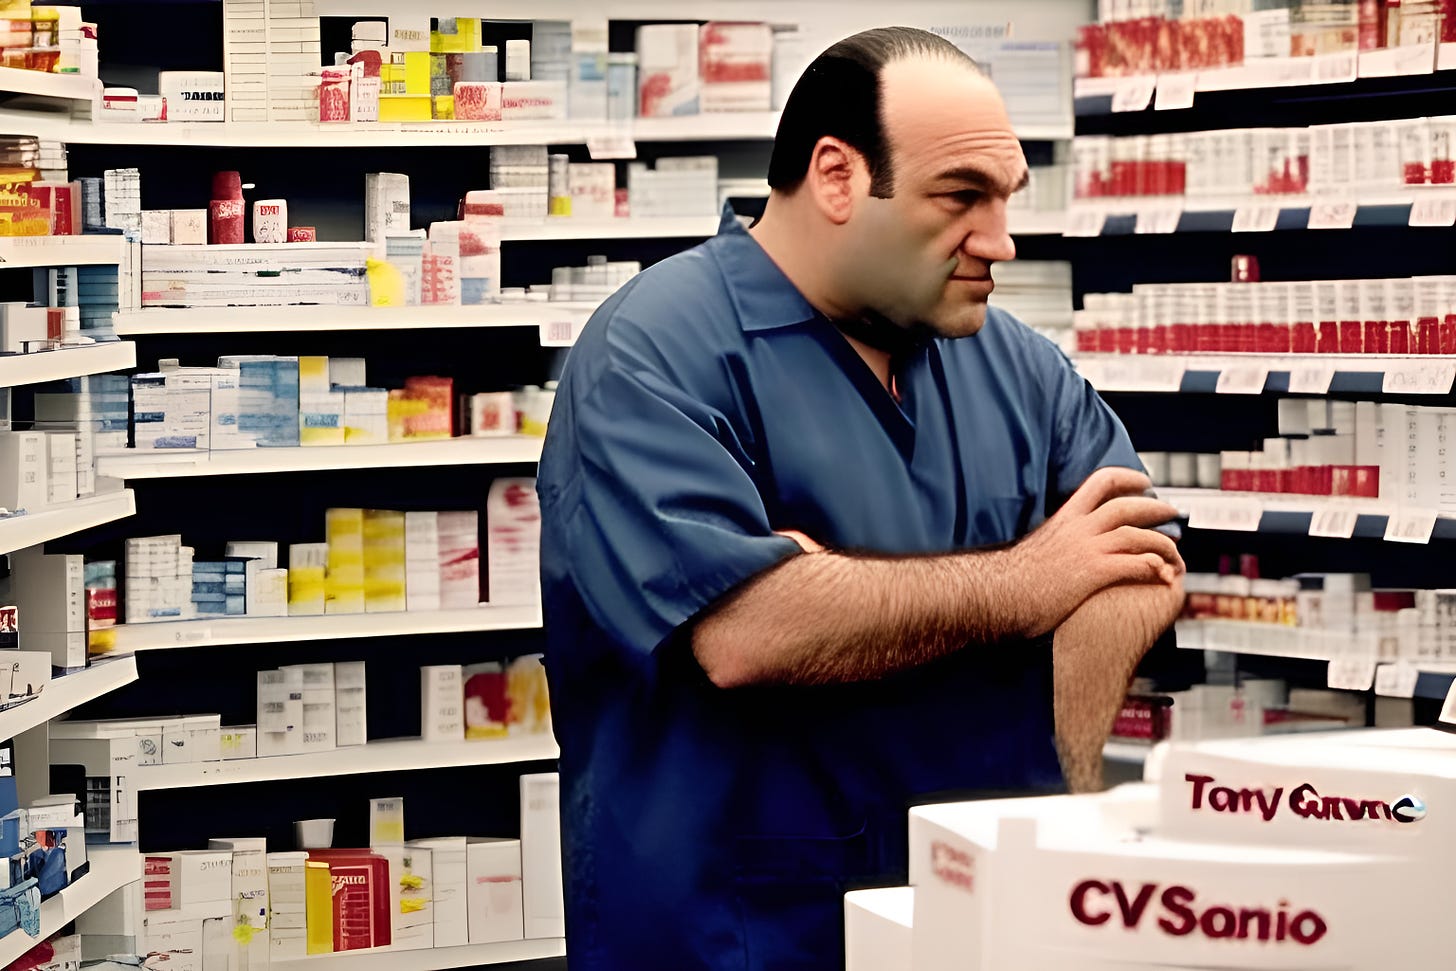 Tony Soprano in the Pharmacy